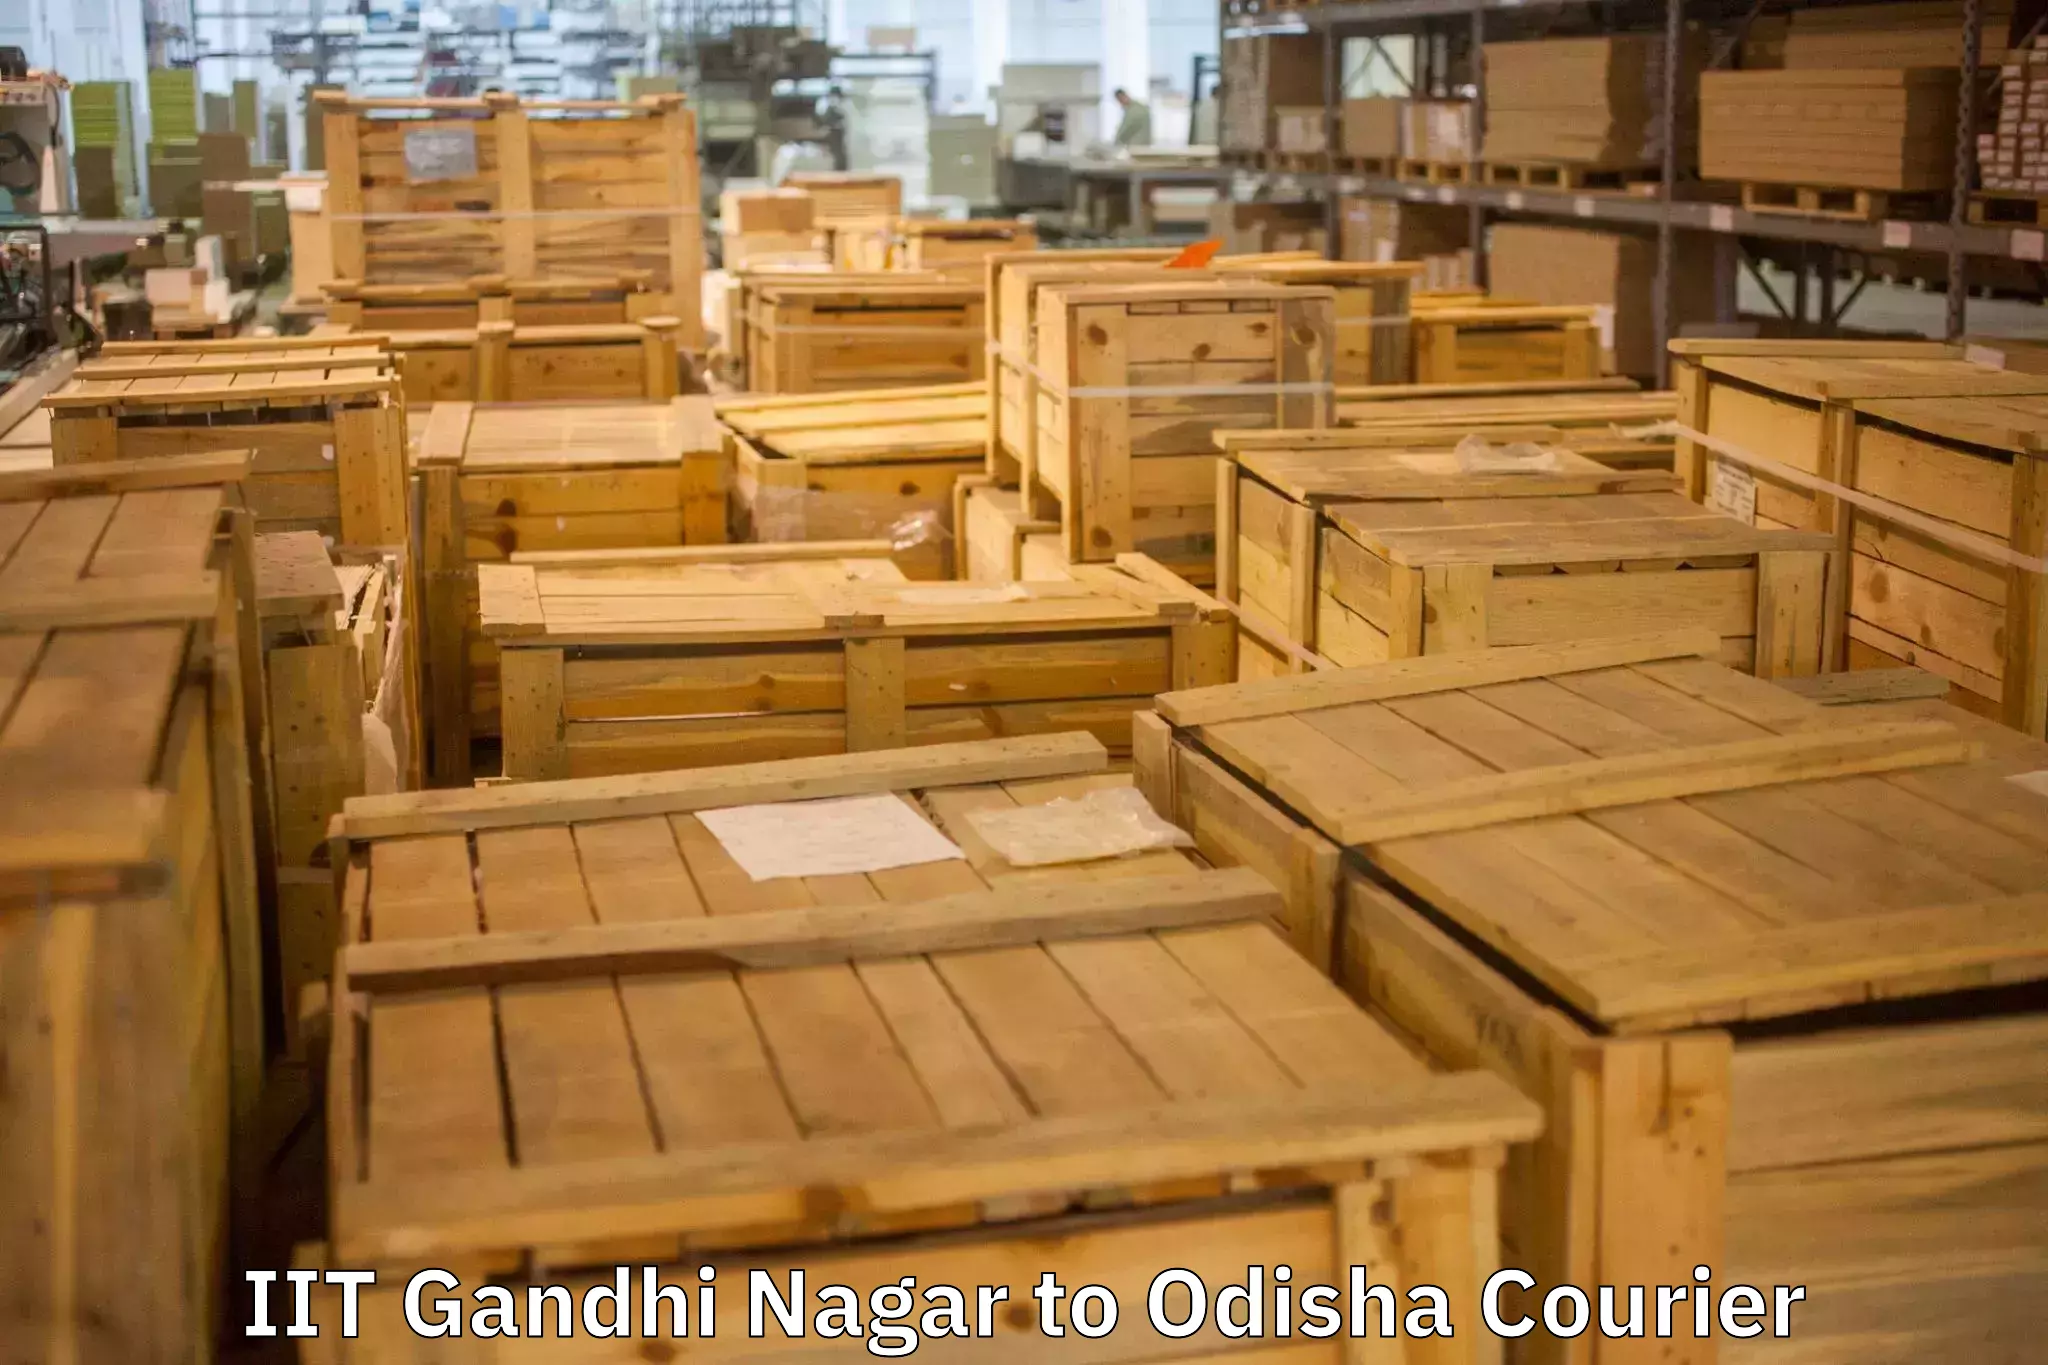 Expert packing and moving IIT Gandhi Nagar to Dhenkanal